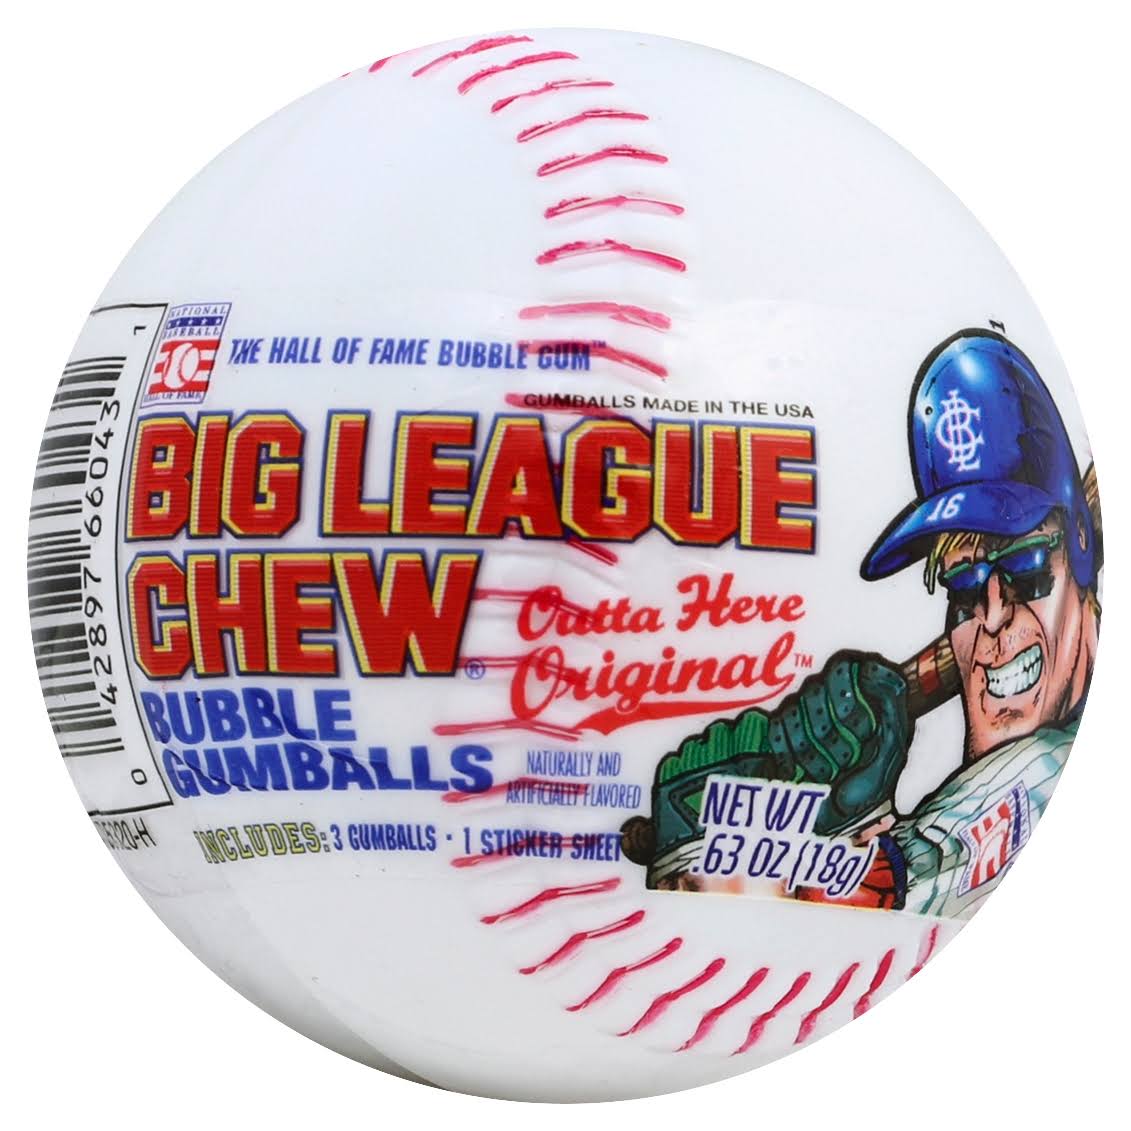 Big League Chew Bubble Gumballs, Outta Here Original - 0.63 oz